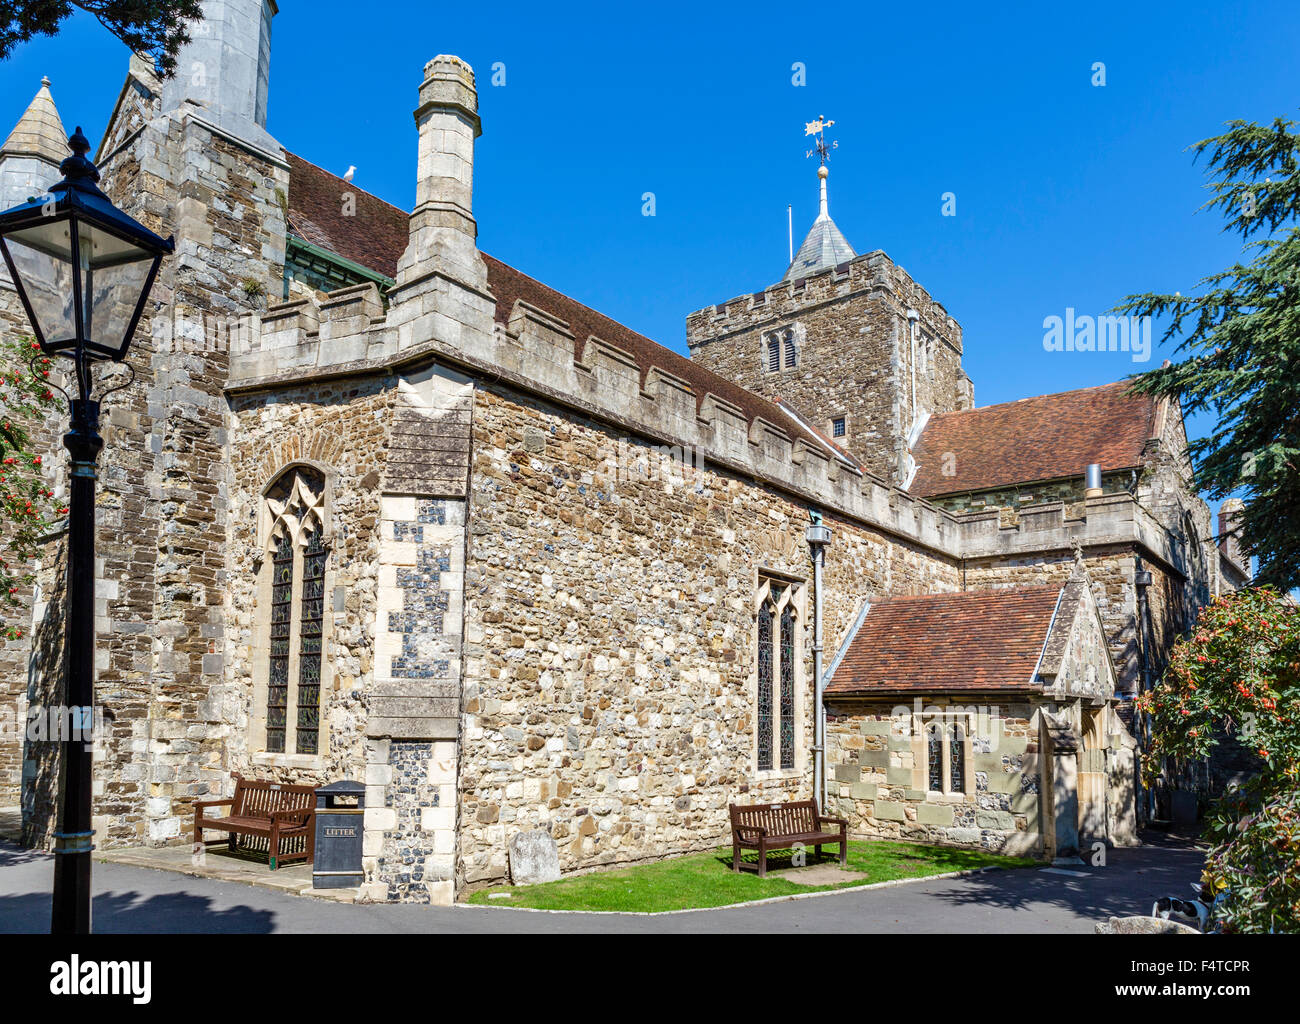 Historischen Str. Marys Kirche in der alten Stadt, Roggen, East Sussex, England, UK Stockfoto